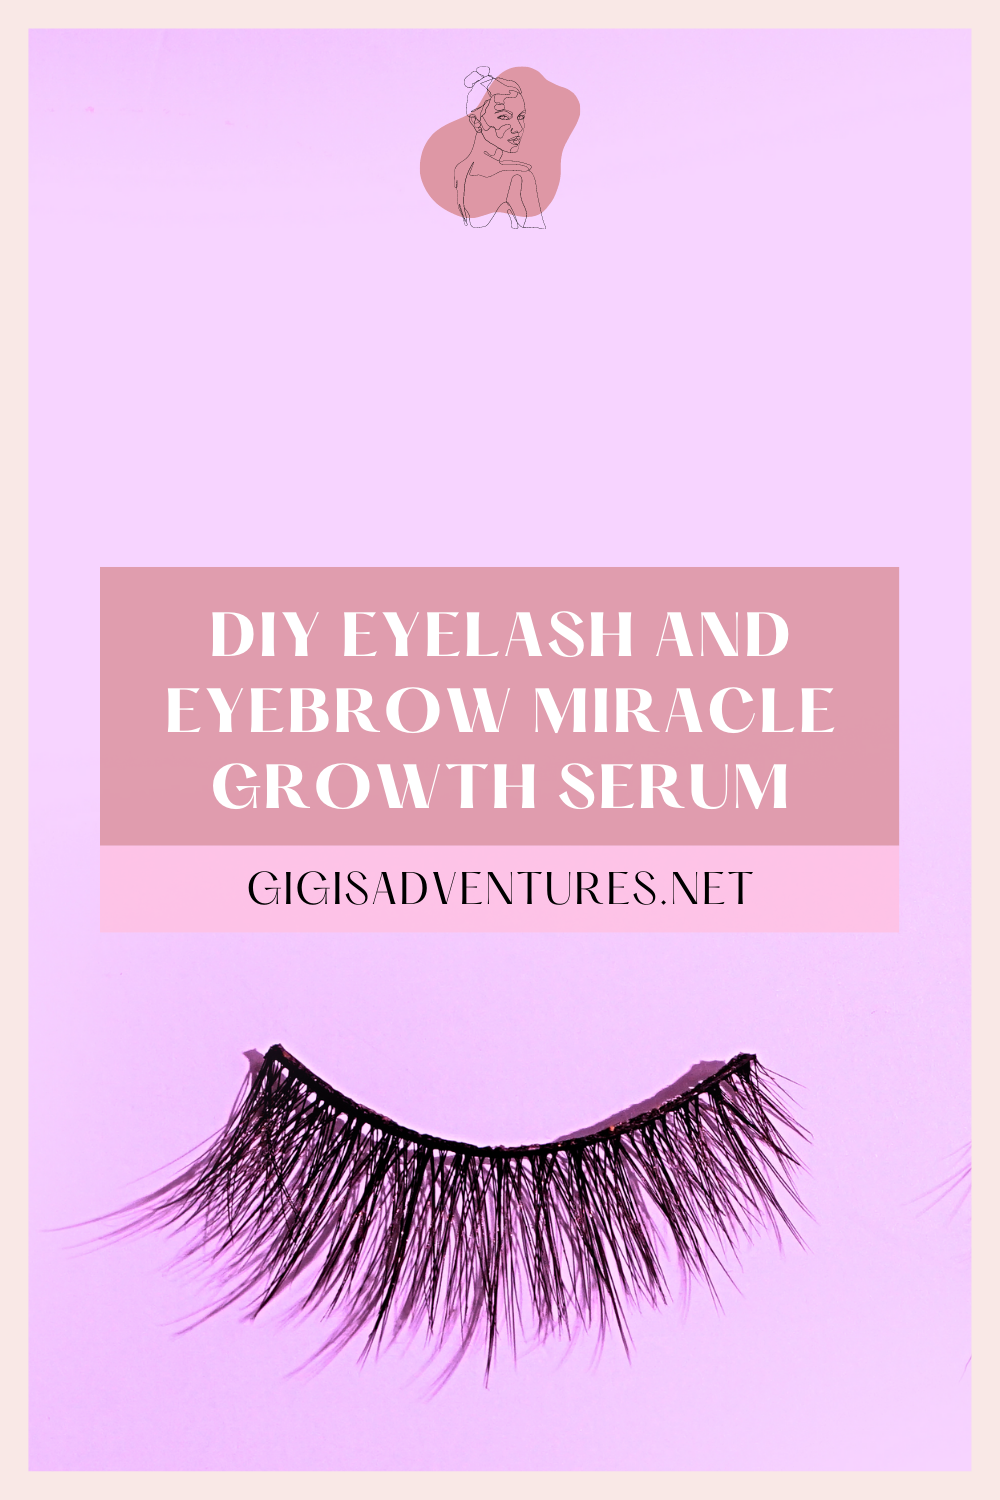 DIY Eyelash and Eyebrow Miracle Growth Serum